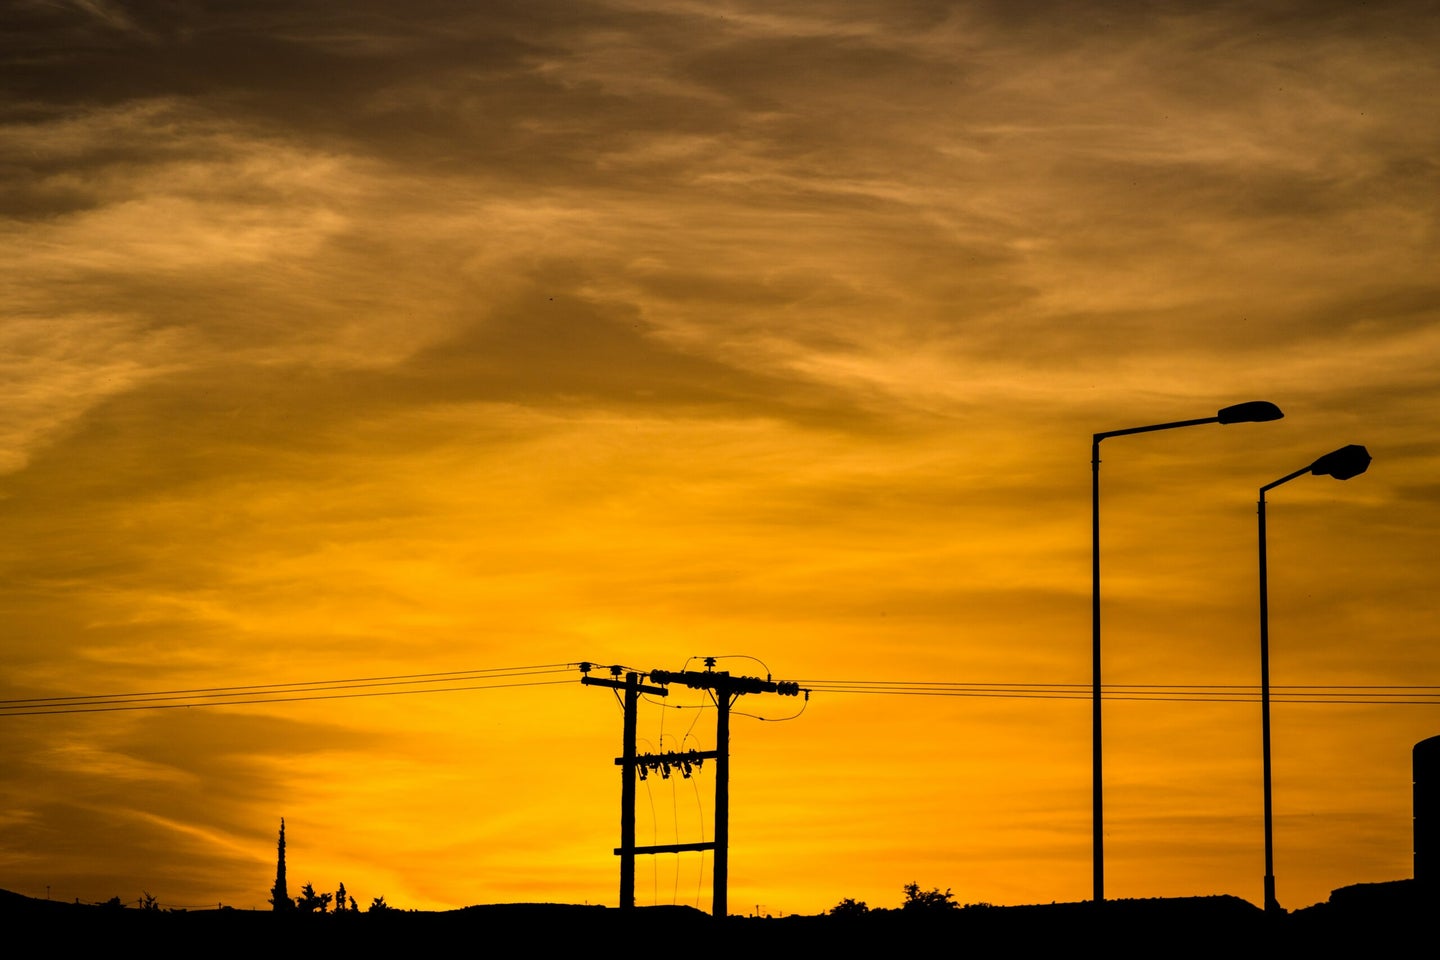 power line silhouette against reddish sunset